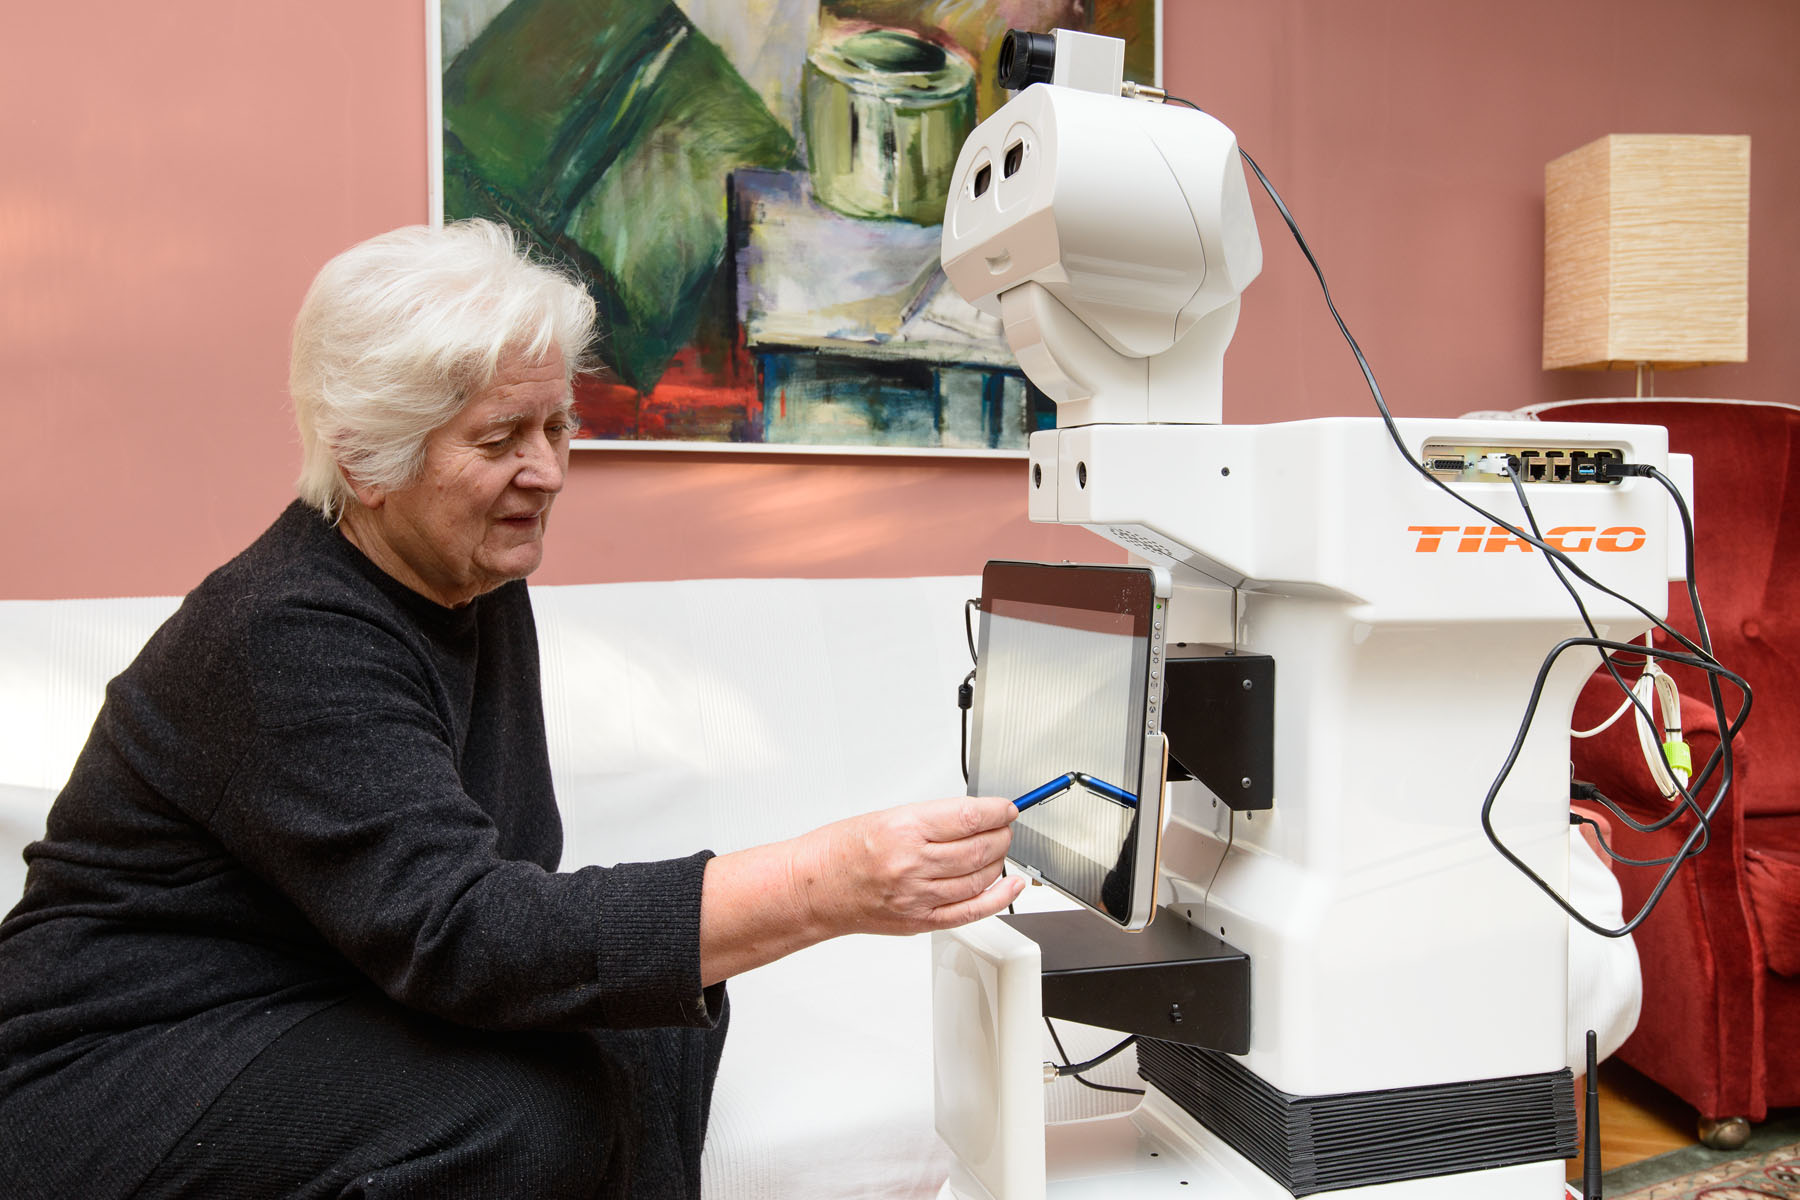 TIAGo robot assisting an older woman